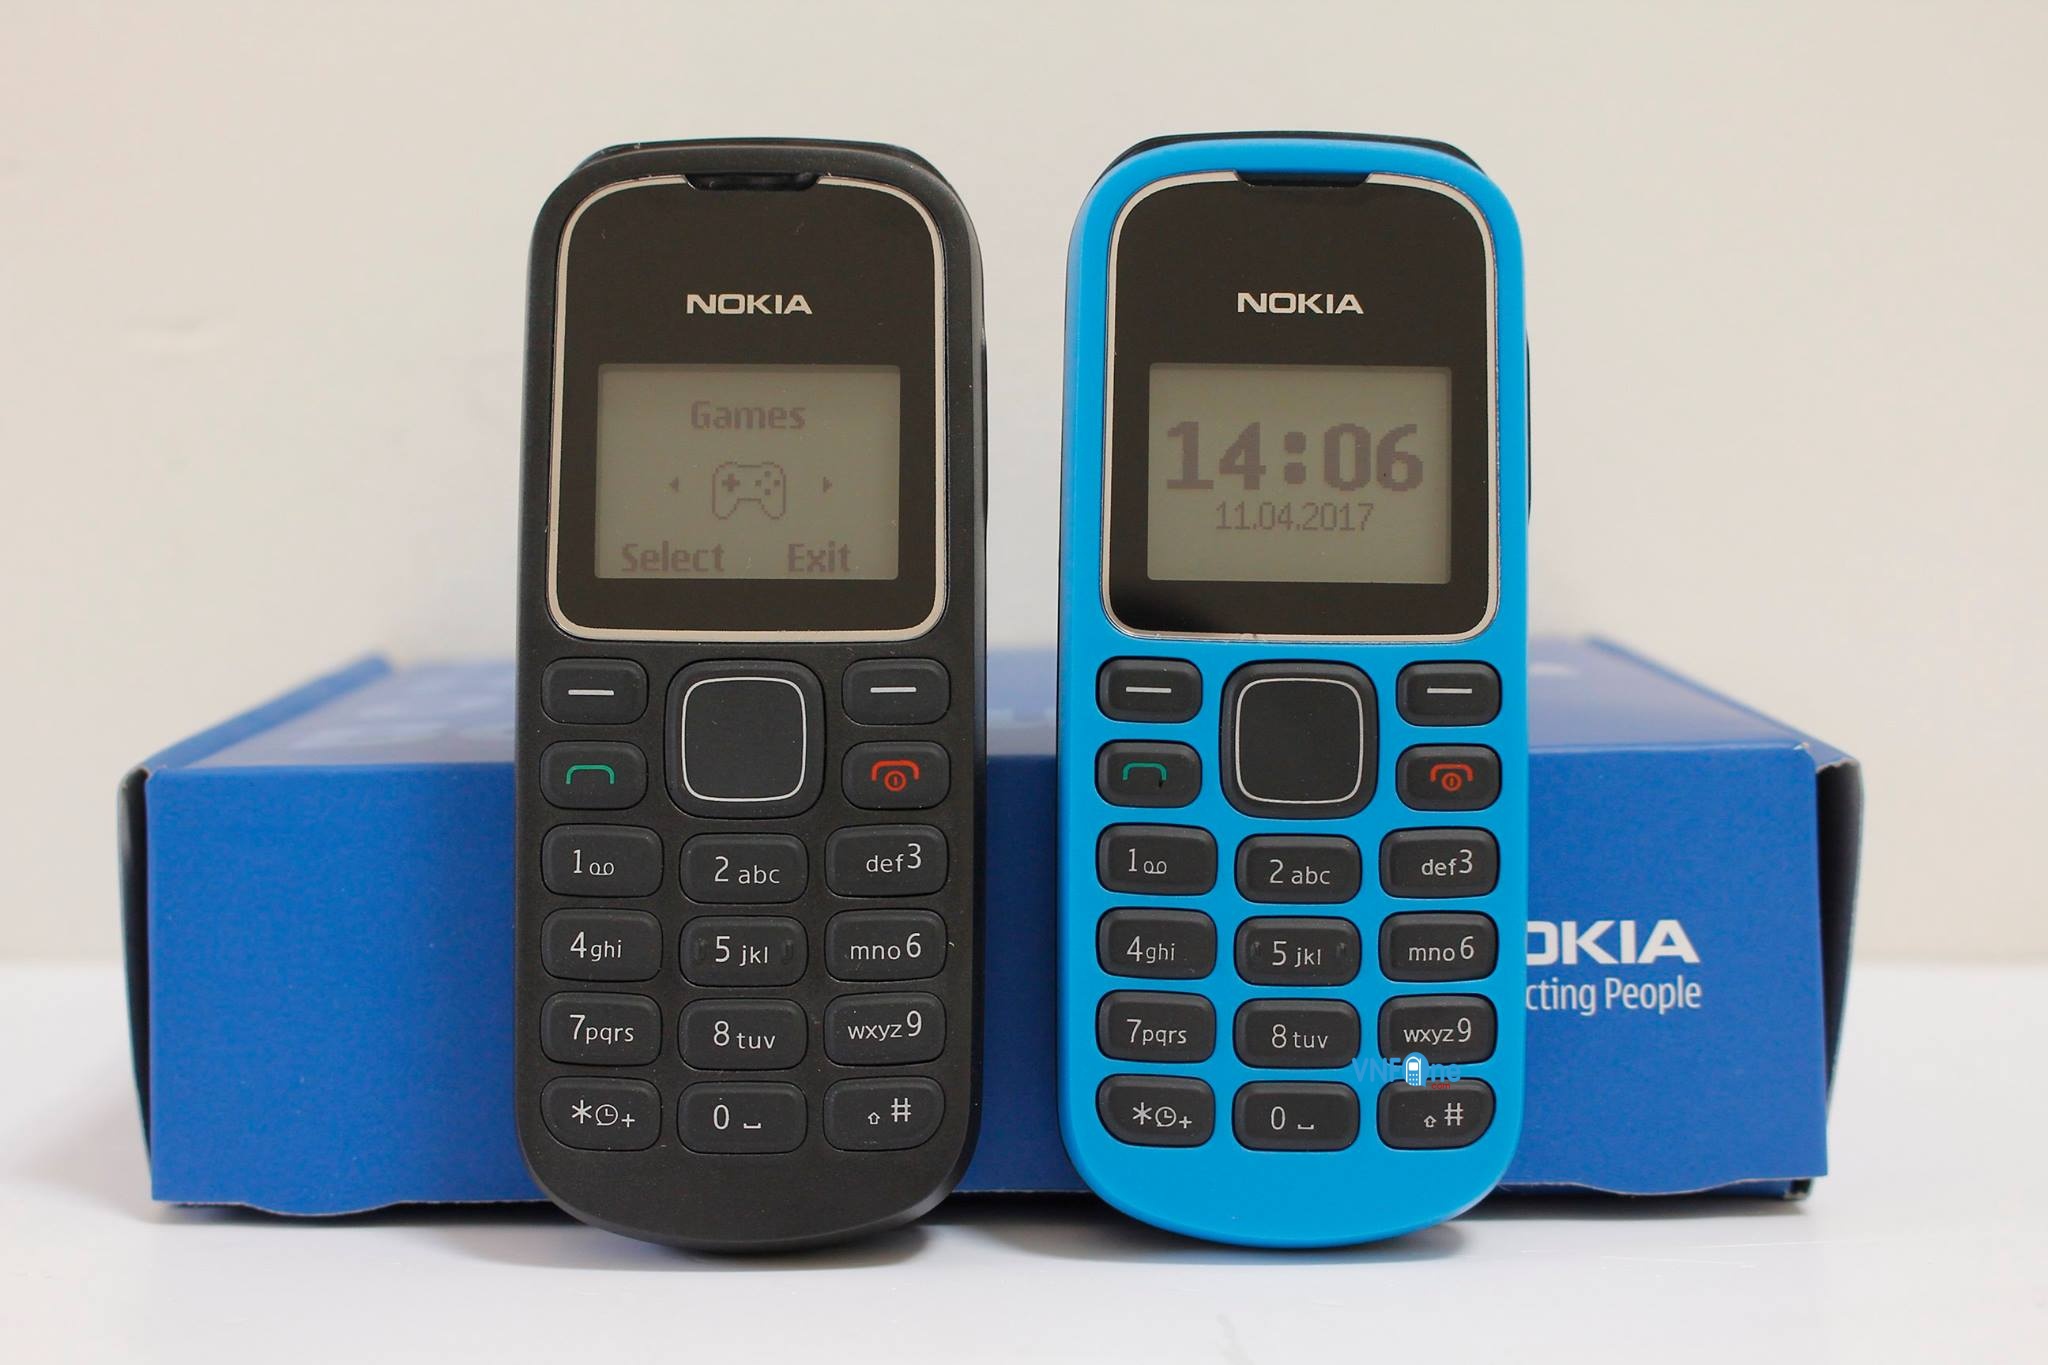 Sở hữu ngay điện thoại Nokia 1280 với thiết kế nhỏ gọn, pin trâu và chất lượng âm thanh tuyệt vời. Không chỉ vậy, chiếc điện thoại này còn có những tính năng hữu ích giúp bạn liên lạc và giải trí thật thoải mái.